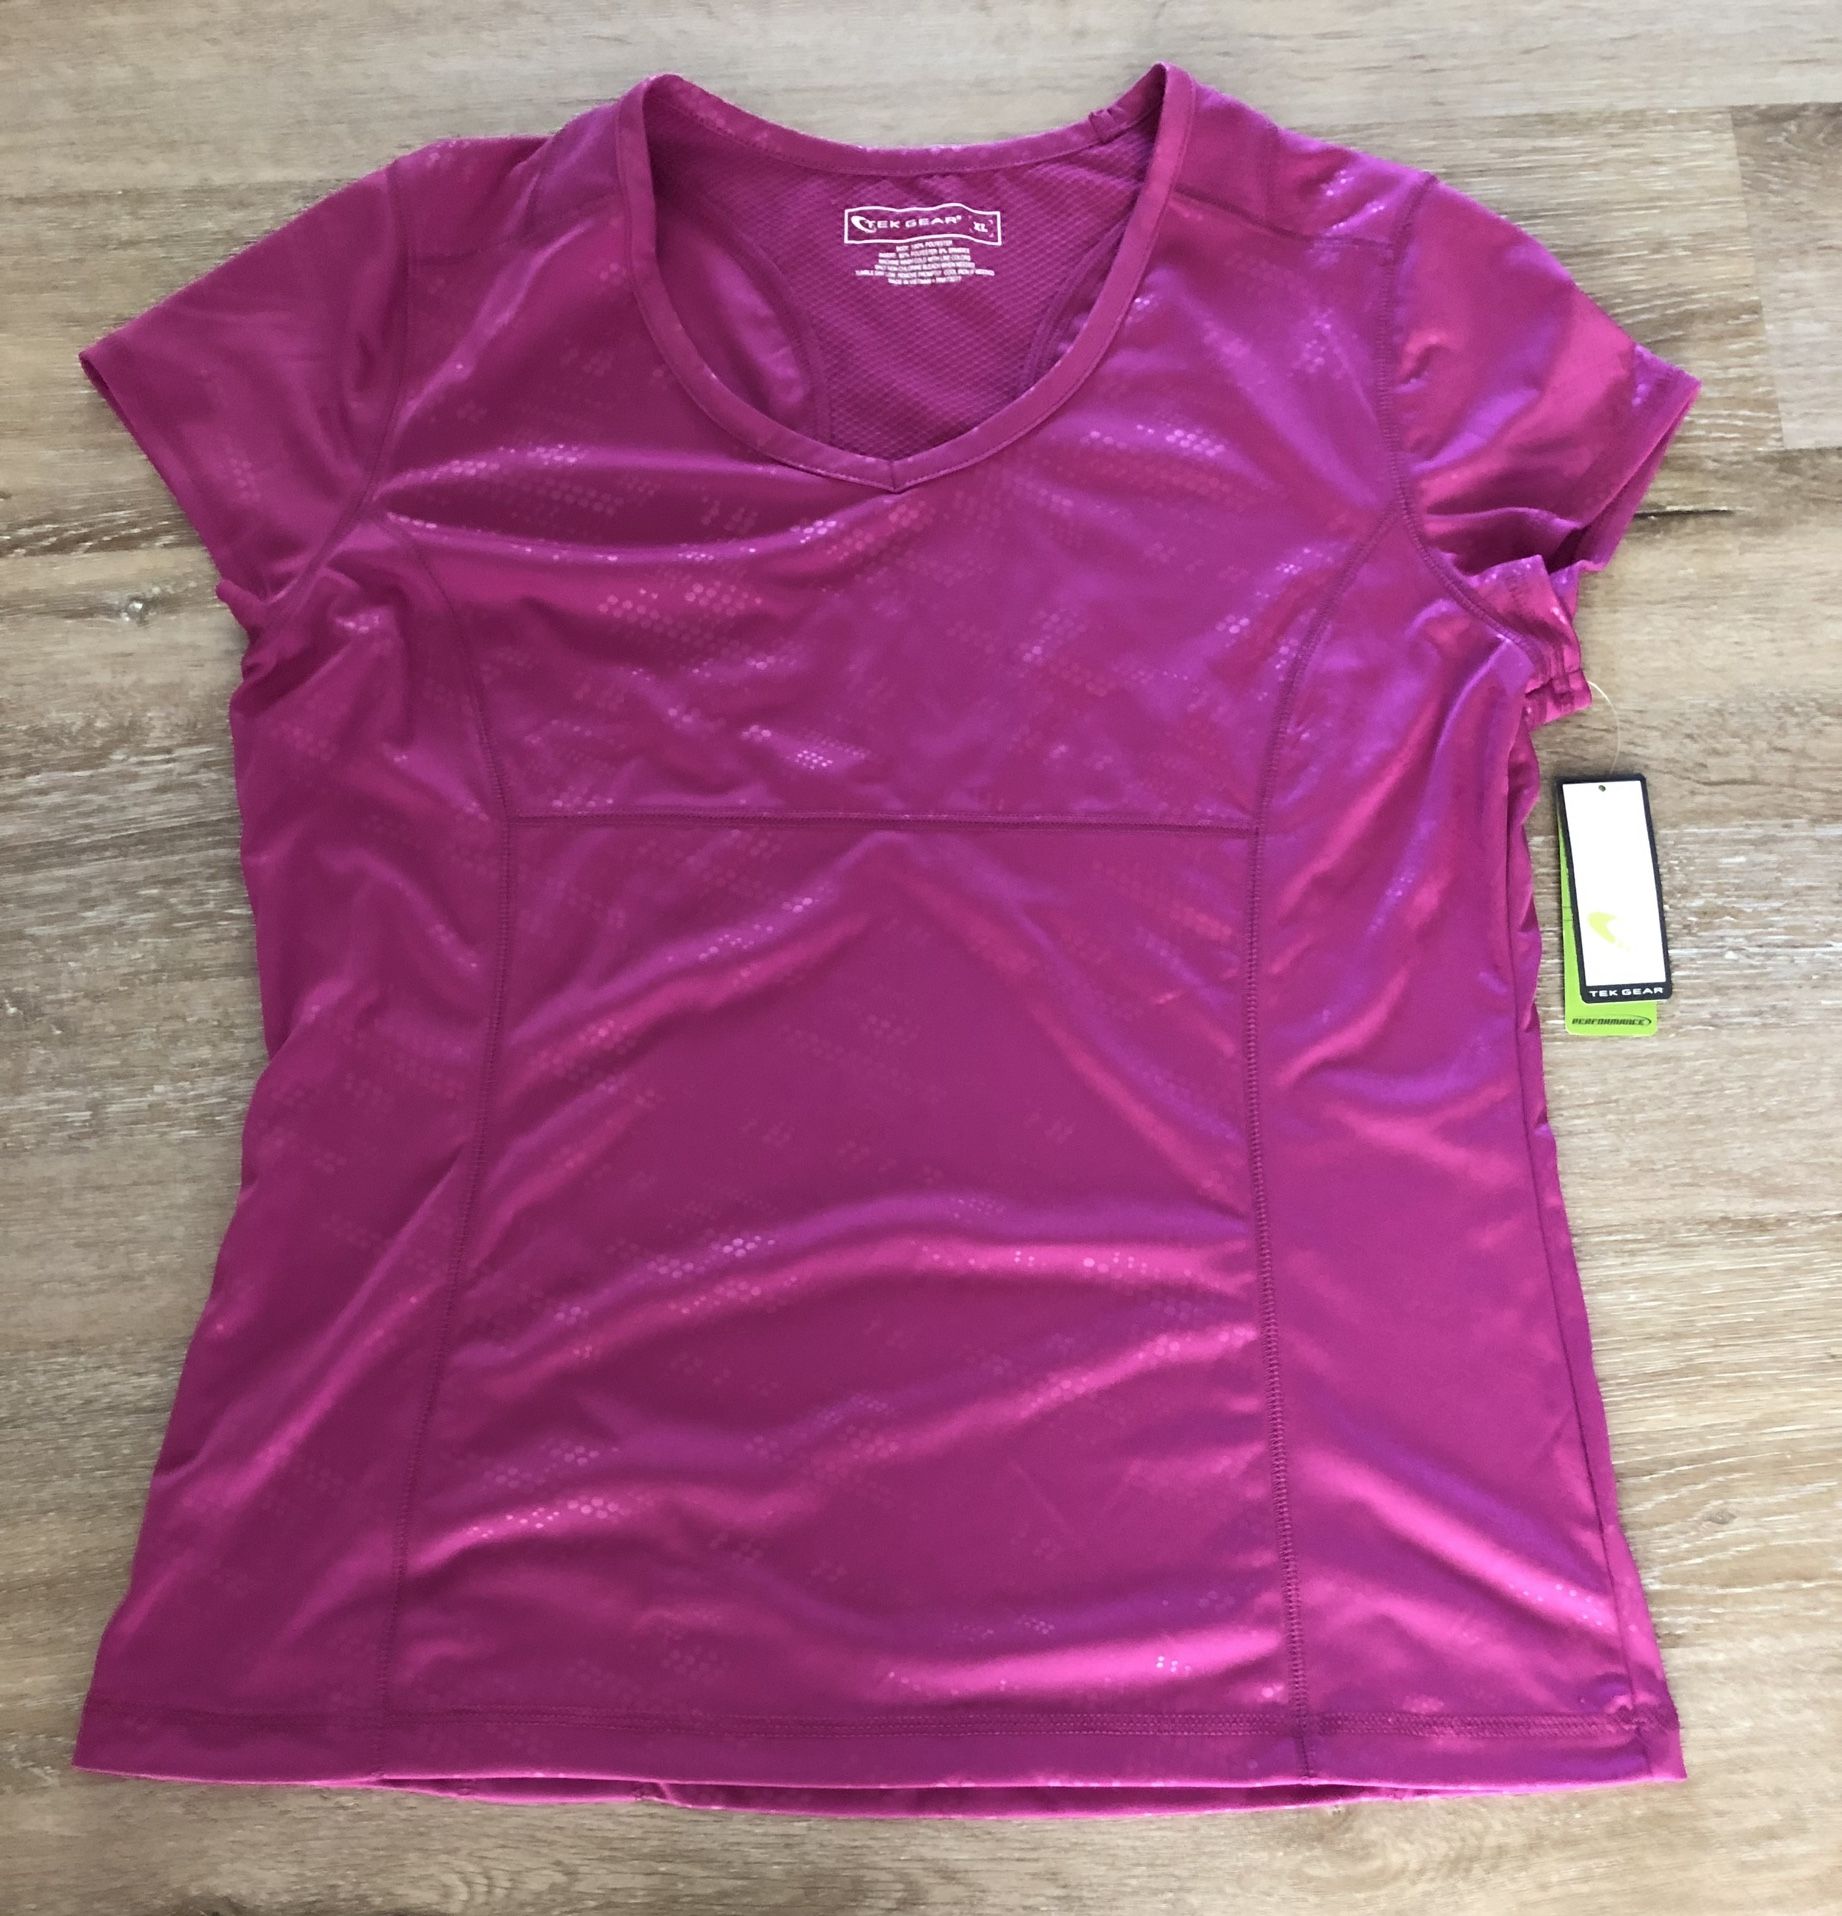 TEK GEAR T-Shirt Tee Purple Wine Moisture Wicking Women’s Size XL  